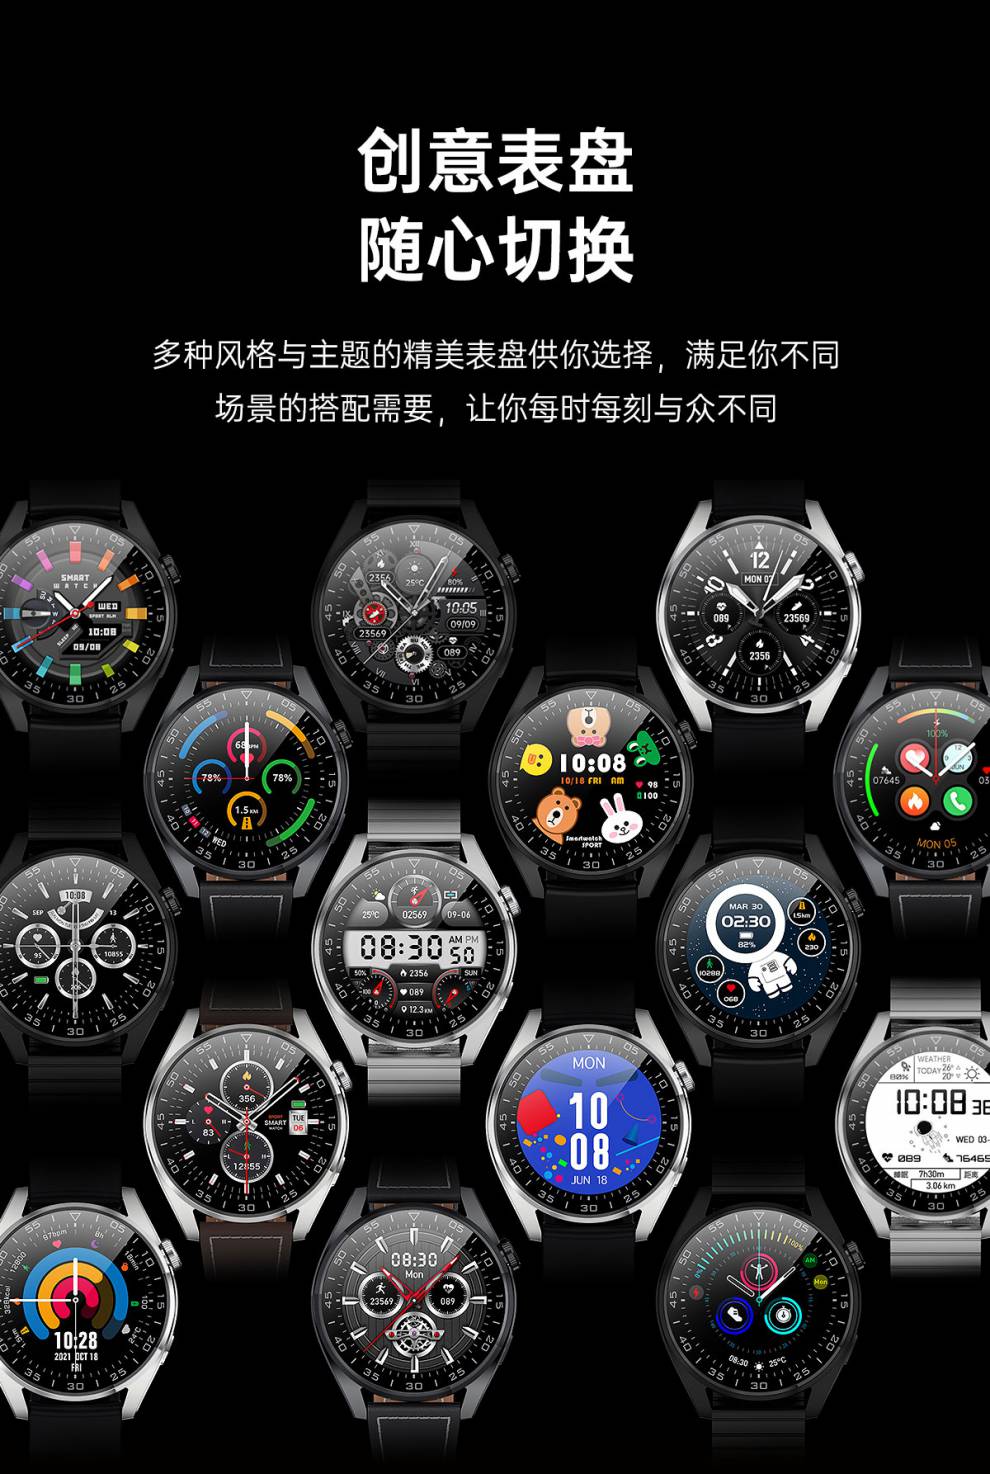 顶配版watch3pro华强北gt3可接打电话智能手表通话蓝牙运动计步监测